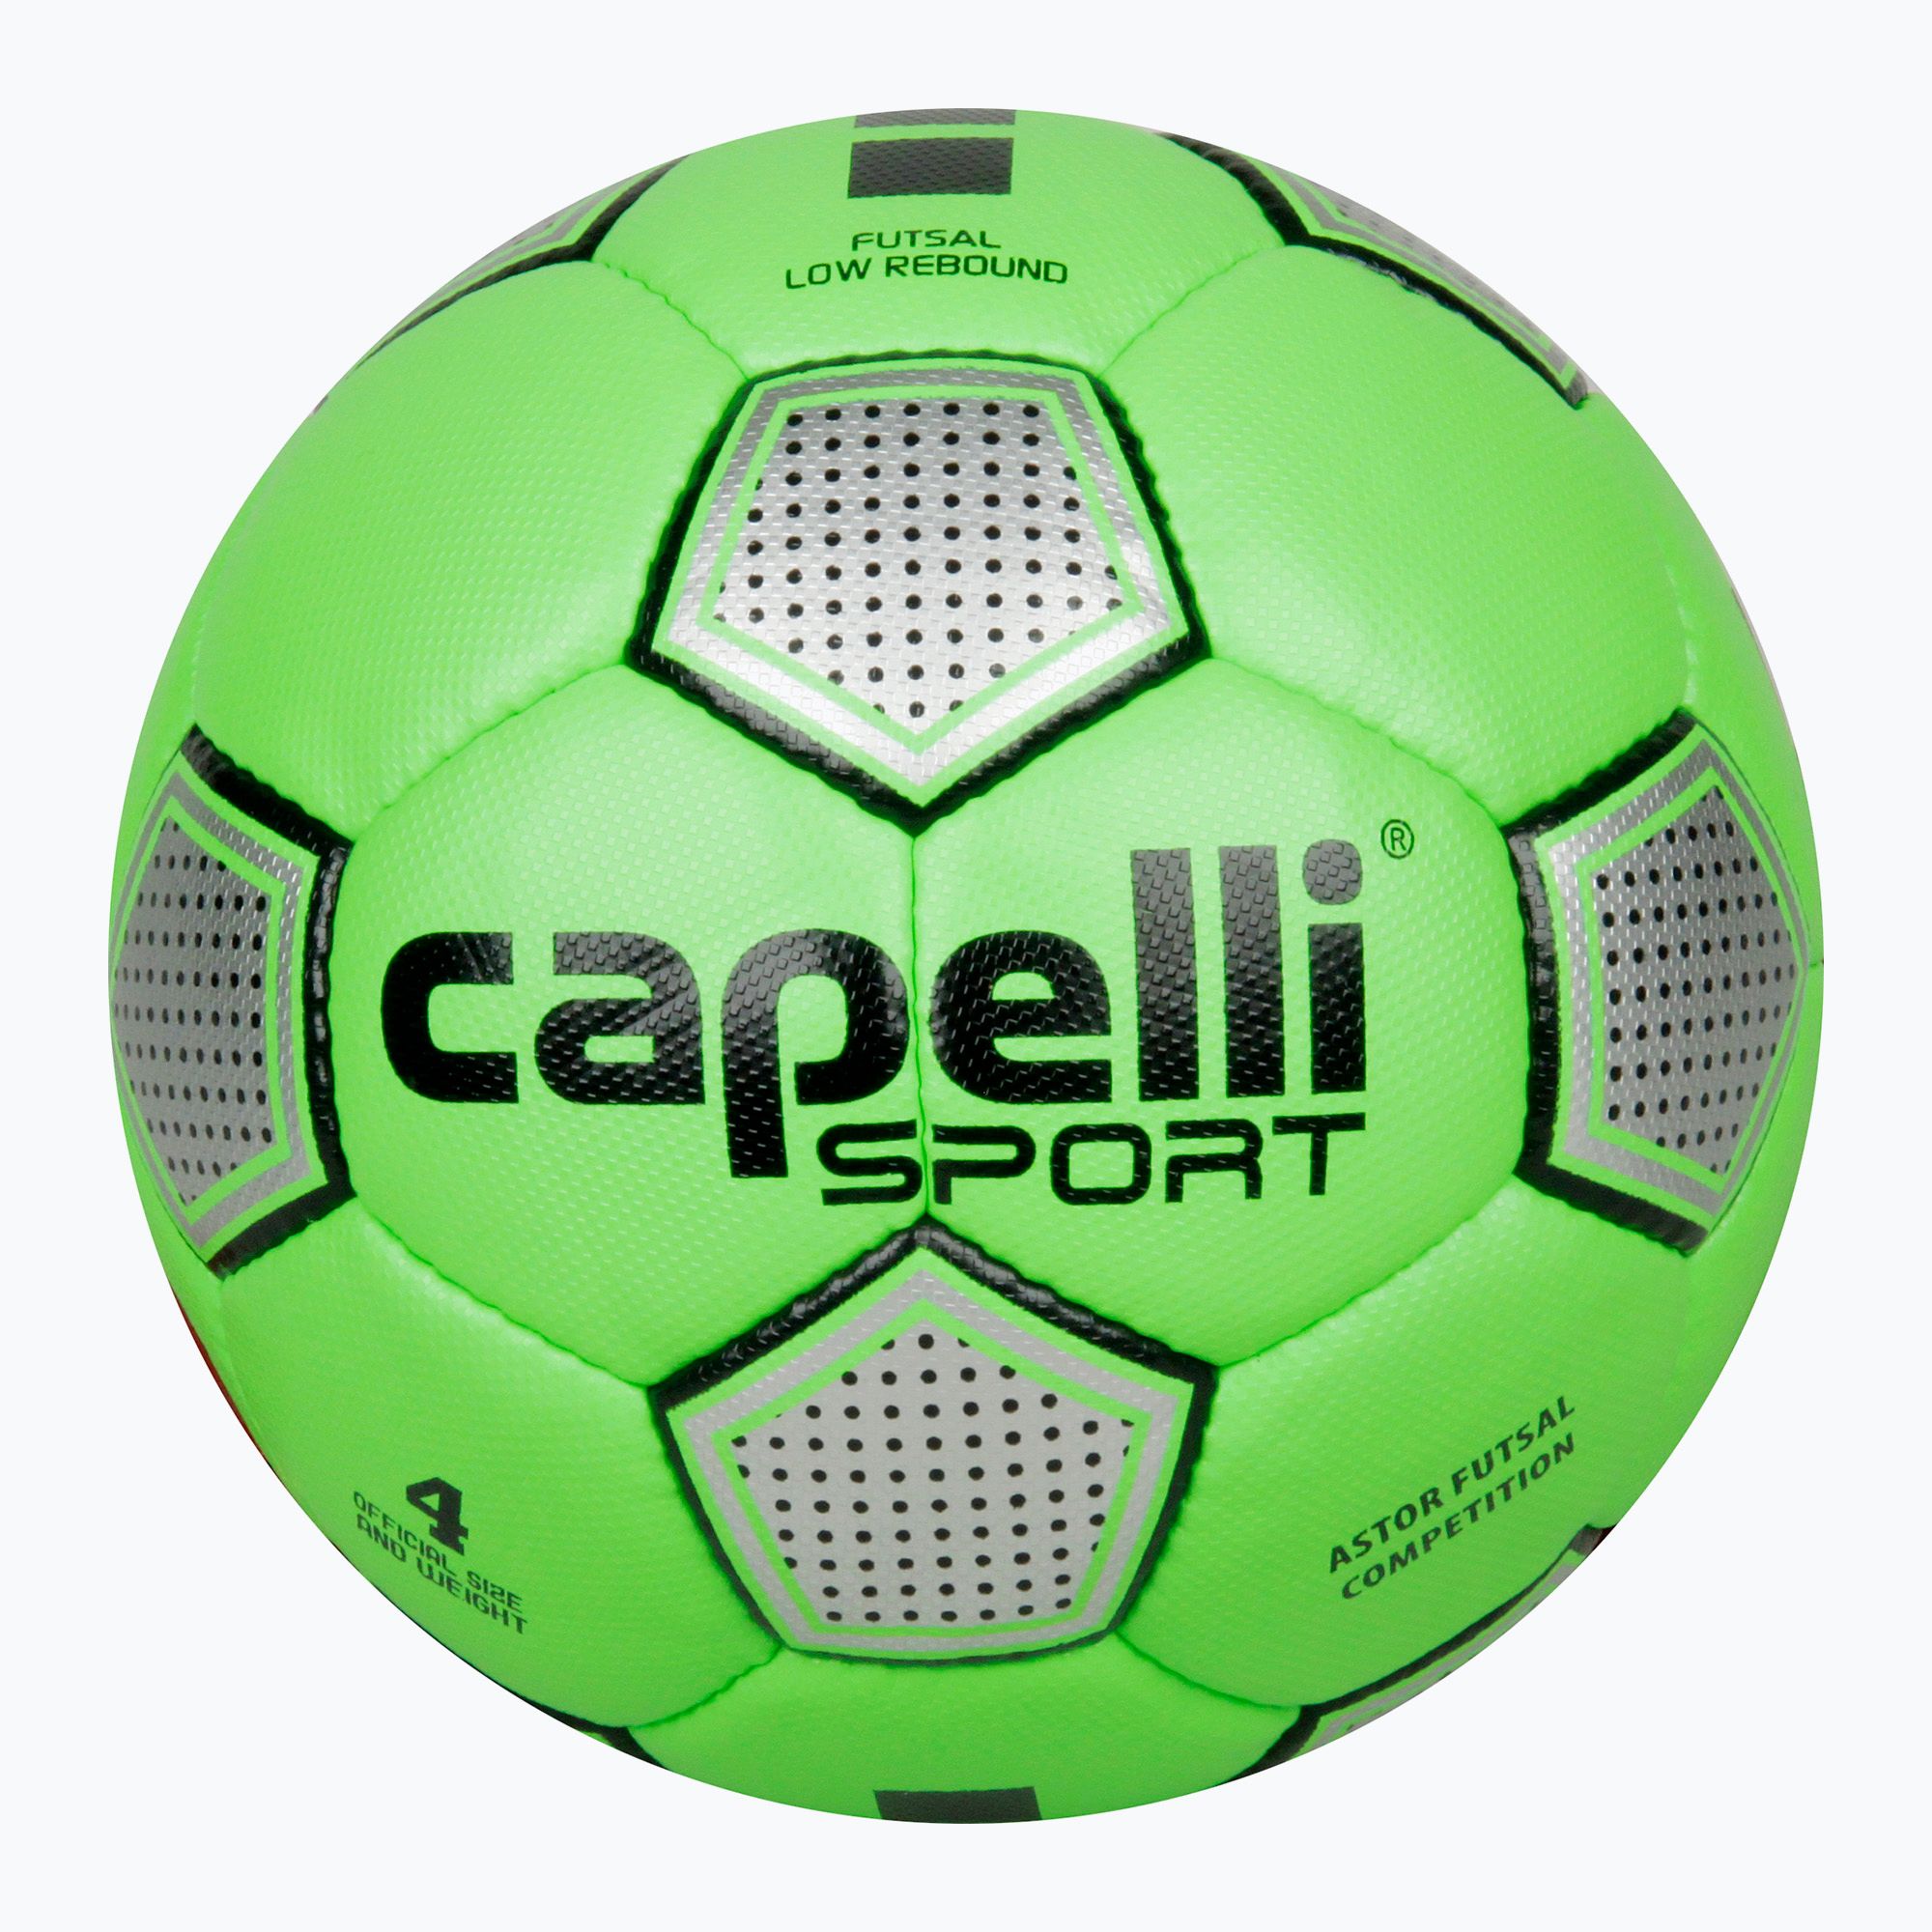 Piłka do piłki nożnej Capelli Astor Futsal Competition AGE-1212 rozmiar 4 zdjęcie nr 4